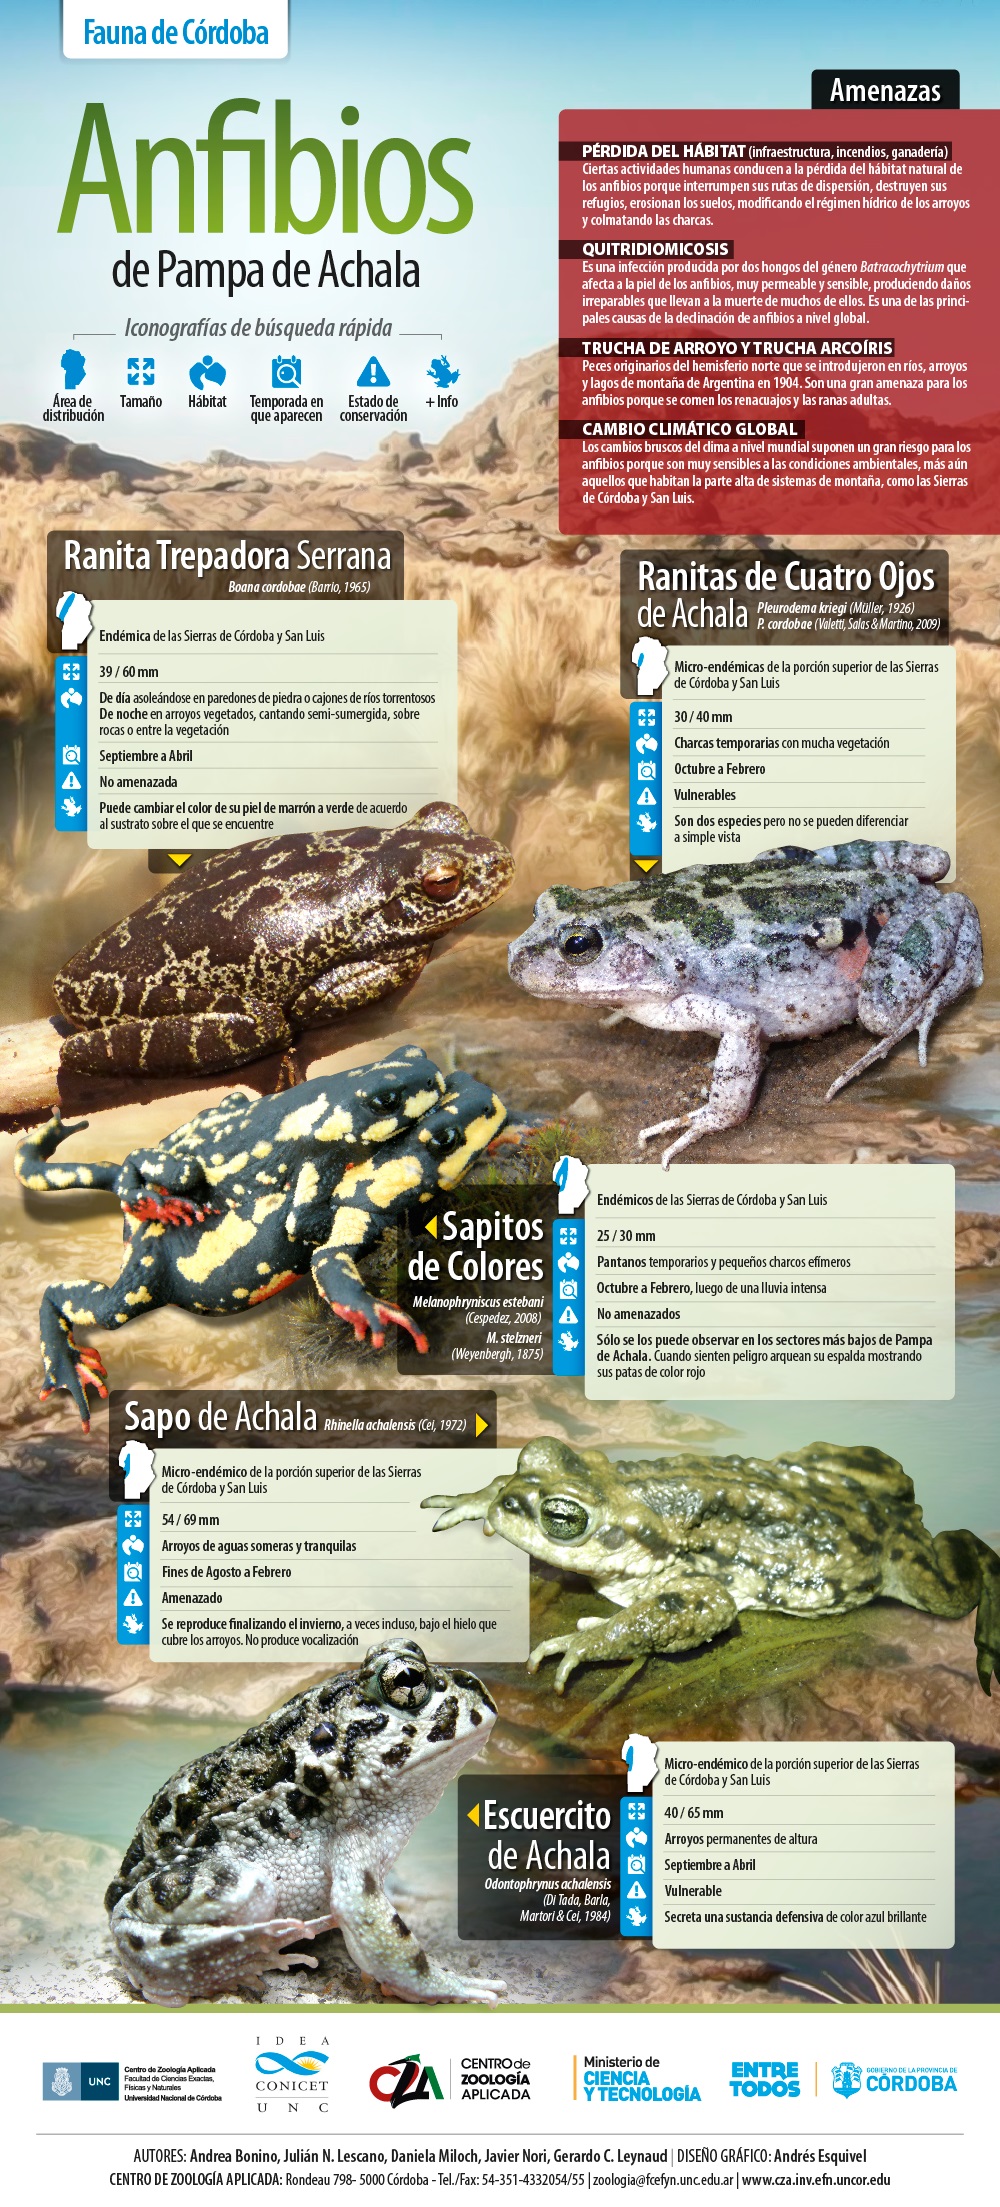 Infografía sobre Anfibios de la Pampa de Achala